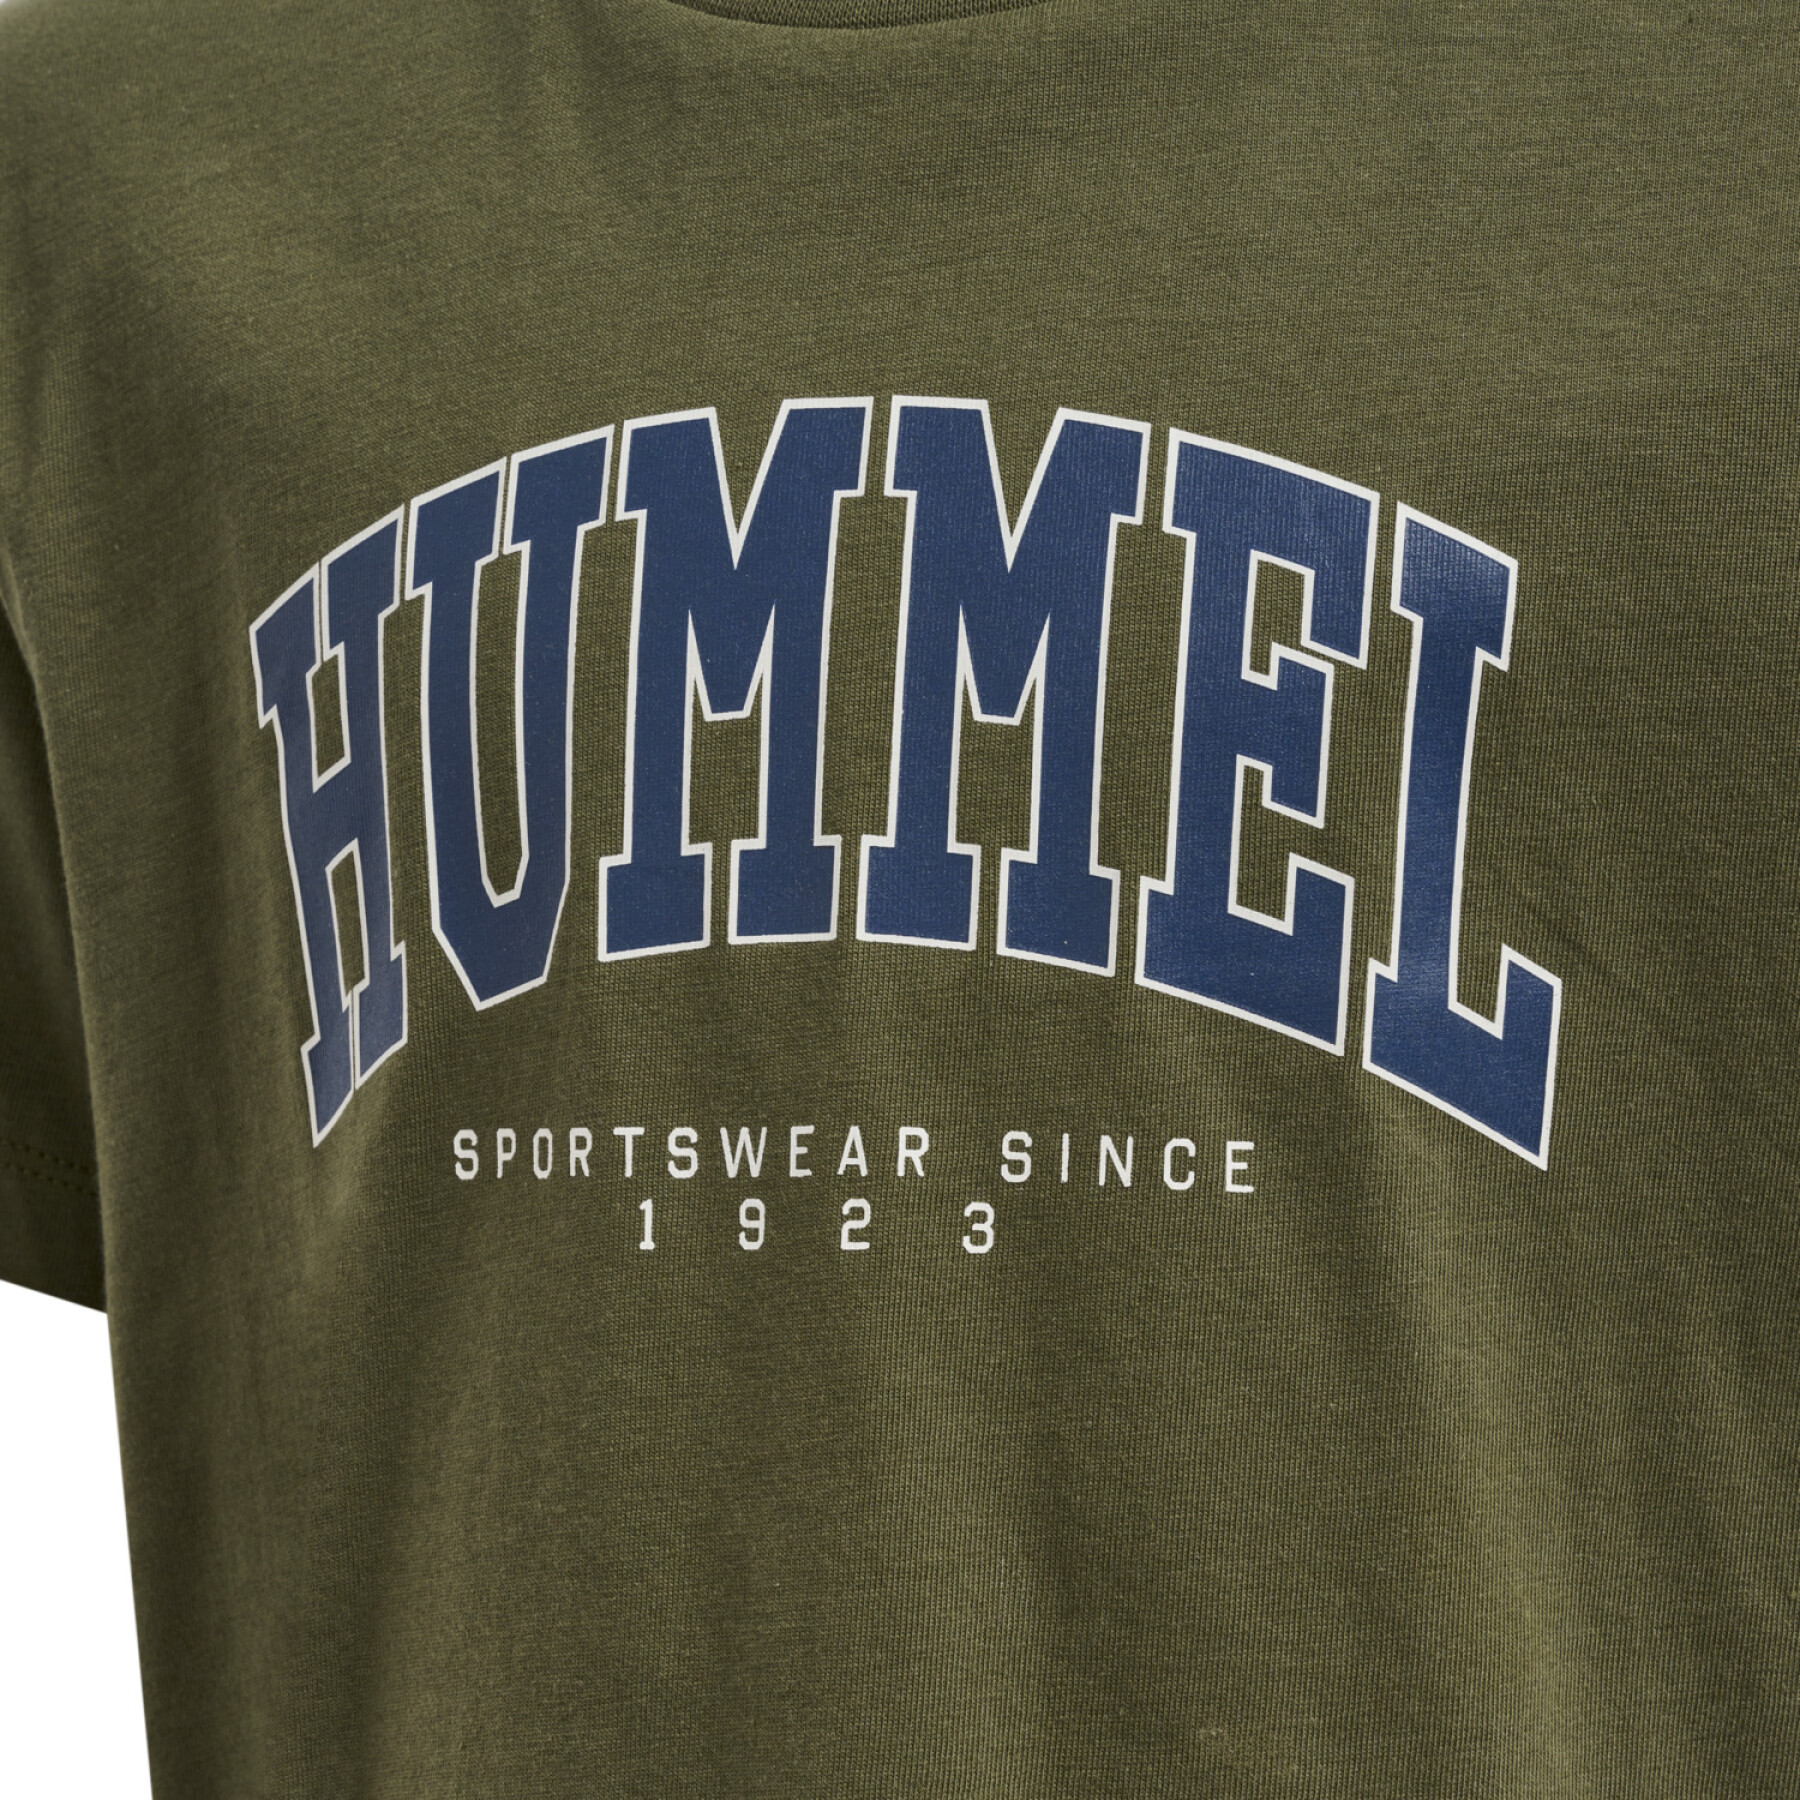 Maglietta per bambini Hummel Fast